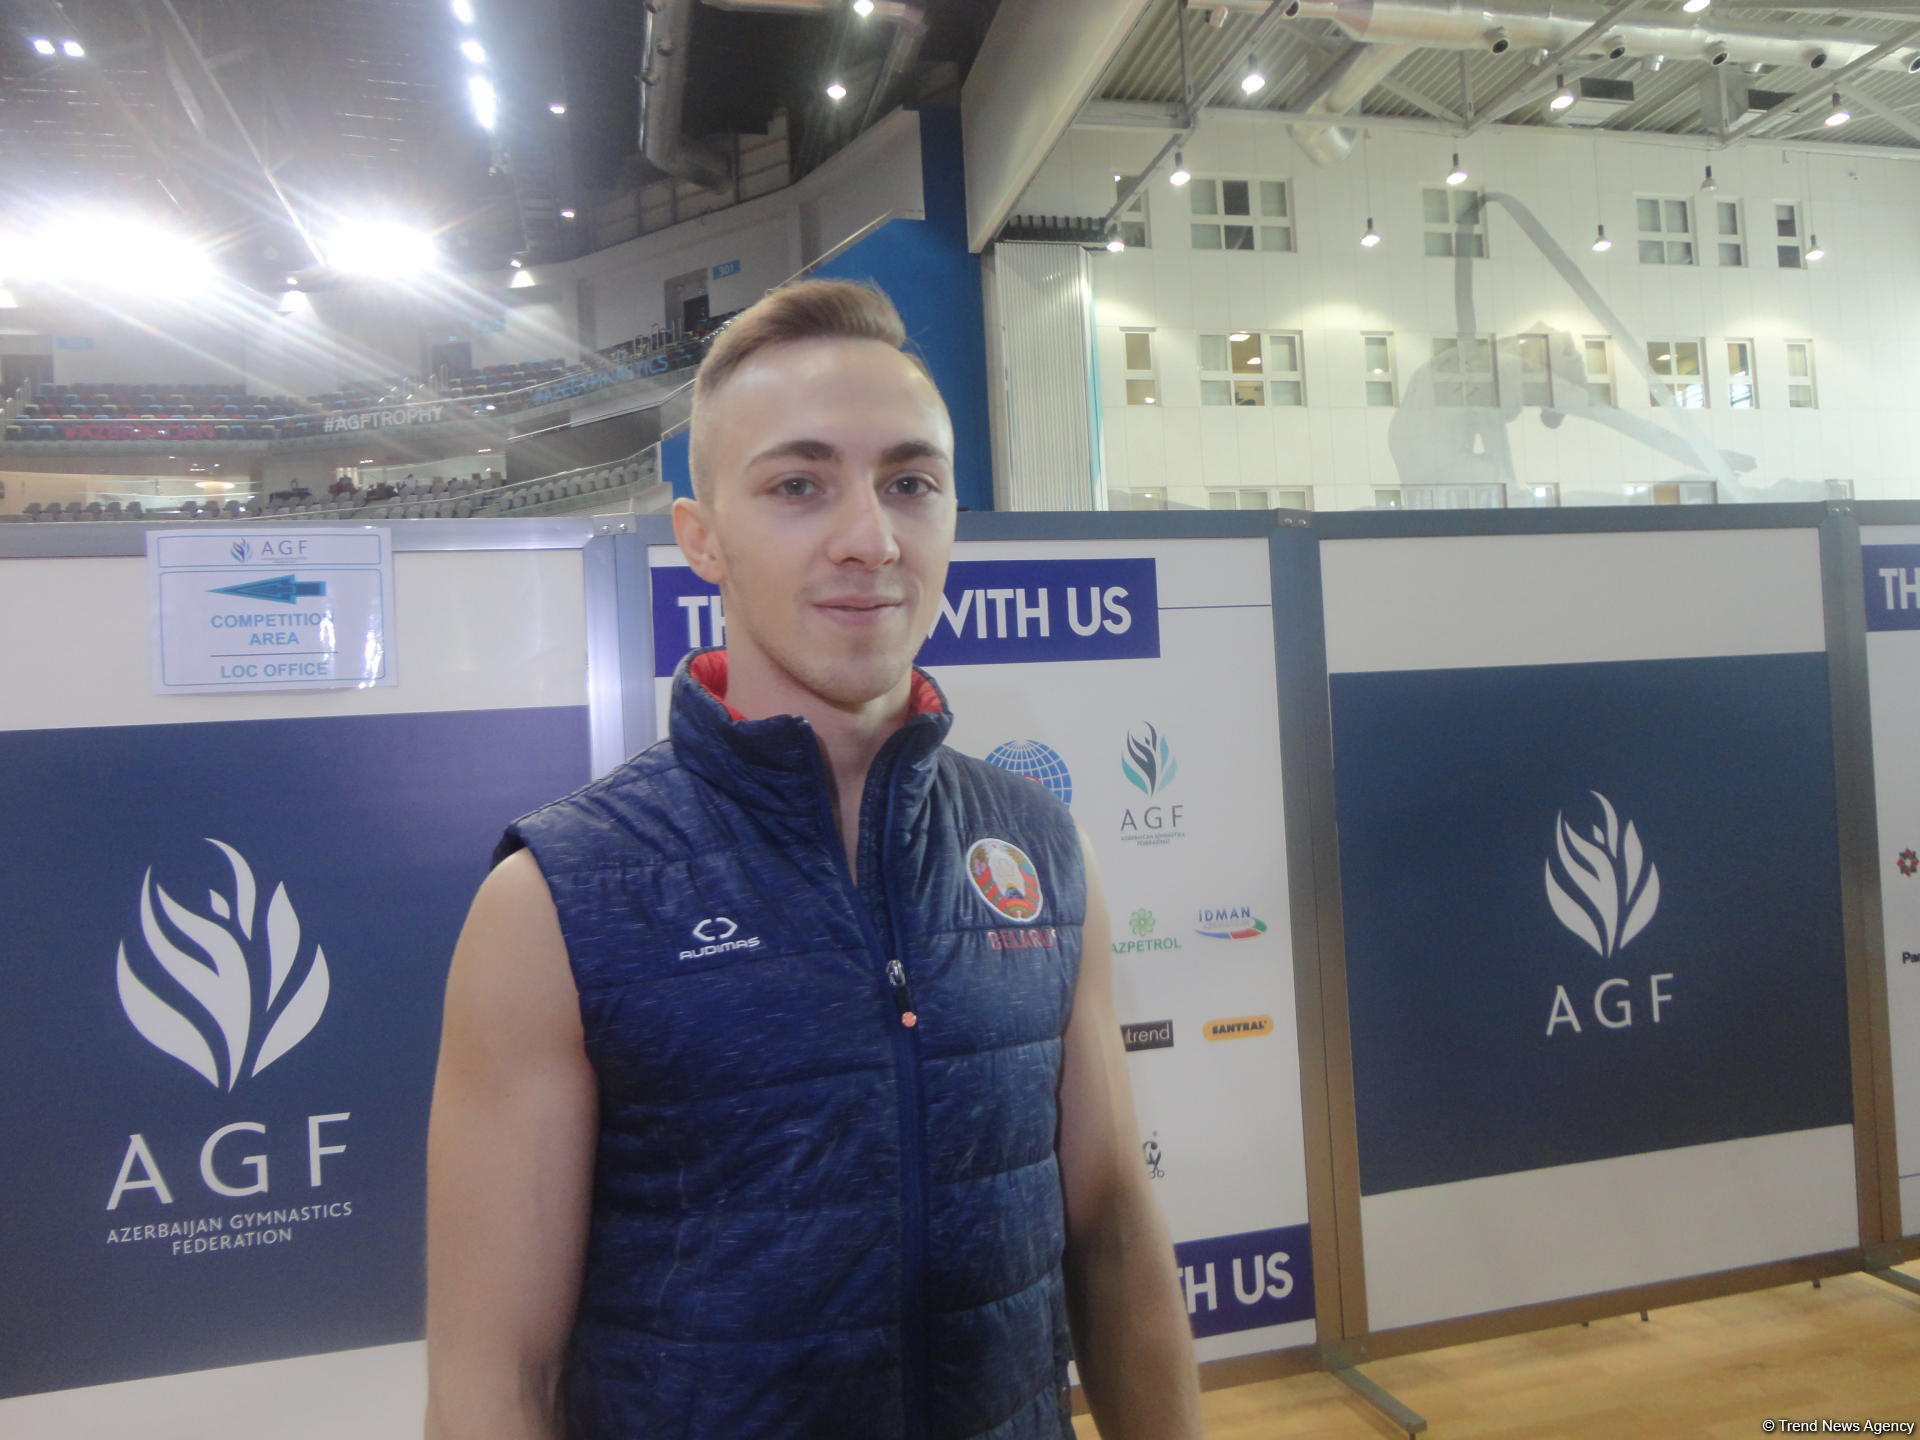 Проведение соревнований в Национальной арене гимнастики - выше всяких похвал: белорусский гимнаст